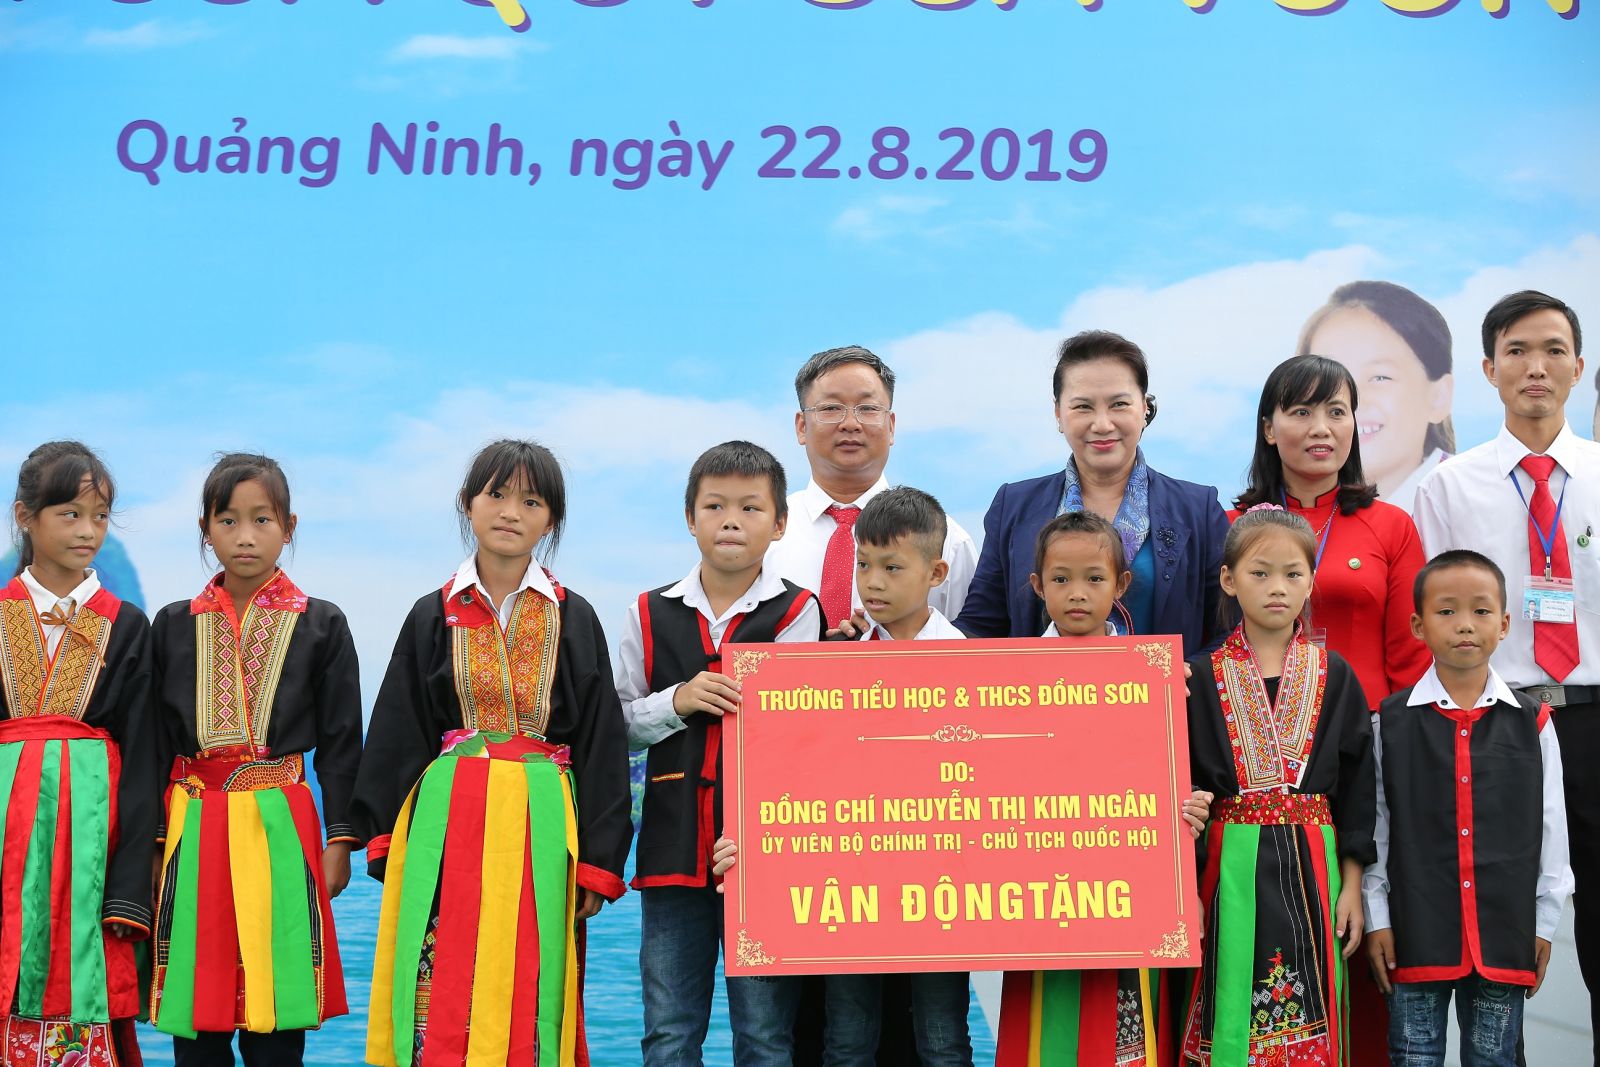 Lễ trao tặng Trường Tiểu học & THCS Đồng Sơn và Quỹ sữa Vươn cao Việt Vam trao tặng sữa cho trẻ em tỉnh Quảng Ninh